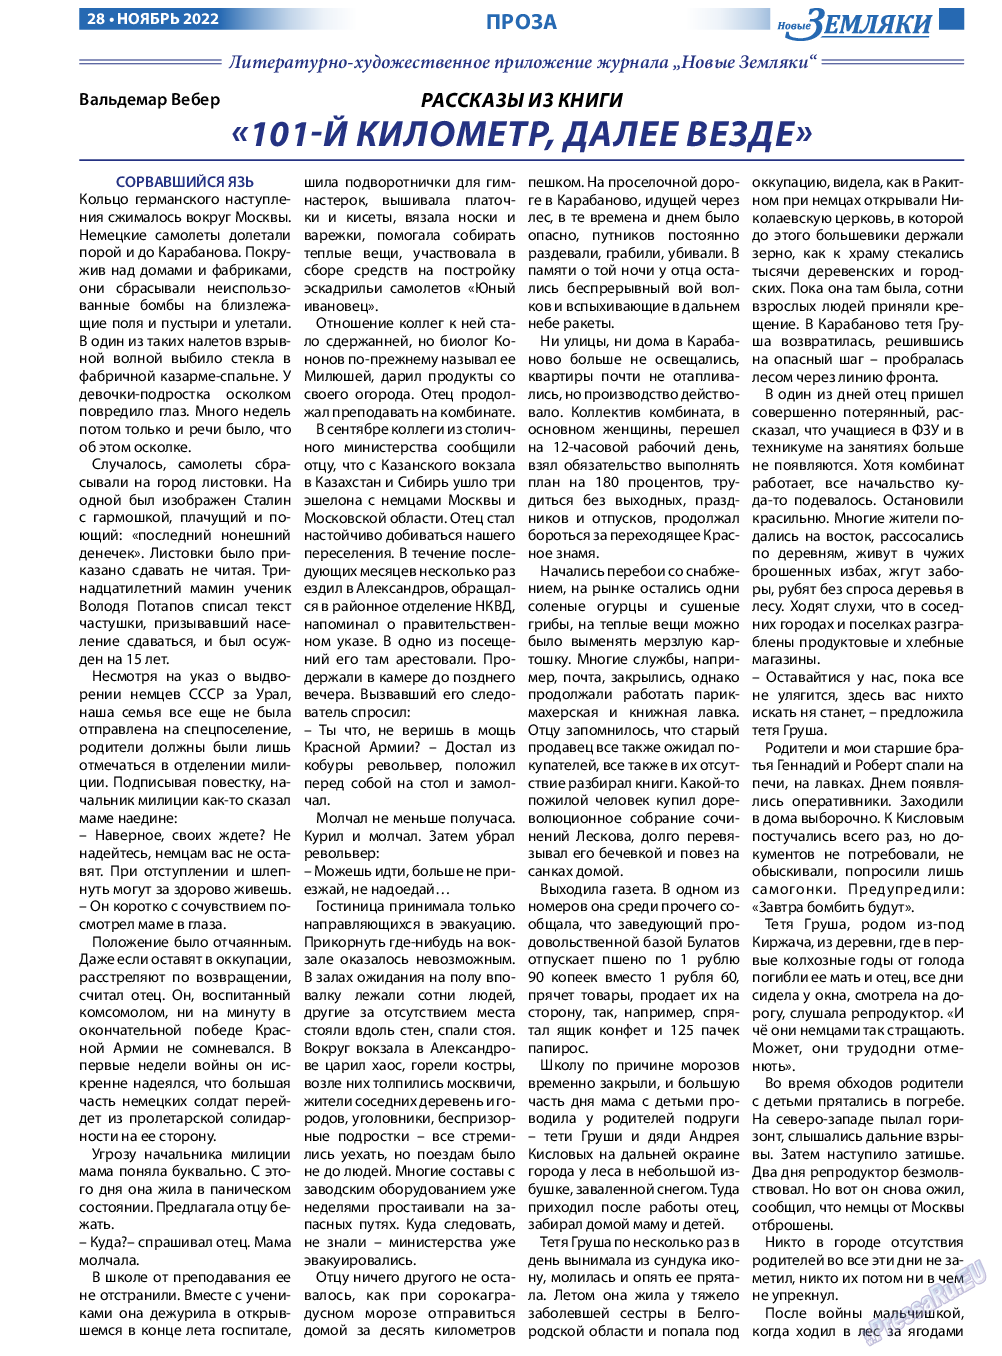 Новые Земляки, газета. 2022 №11 стр.28